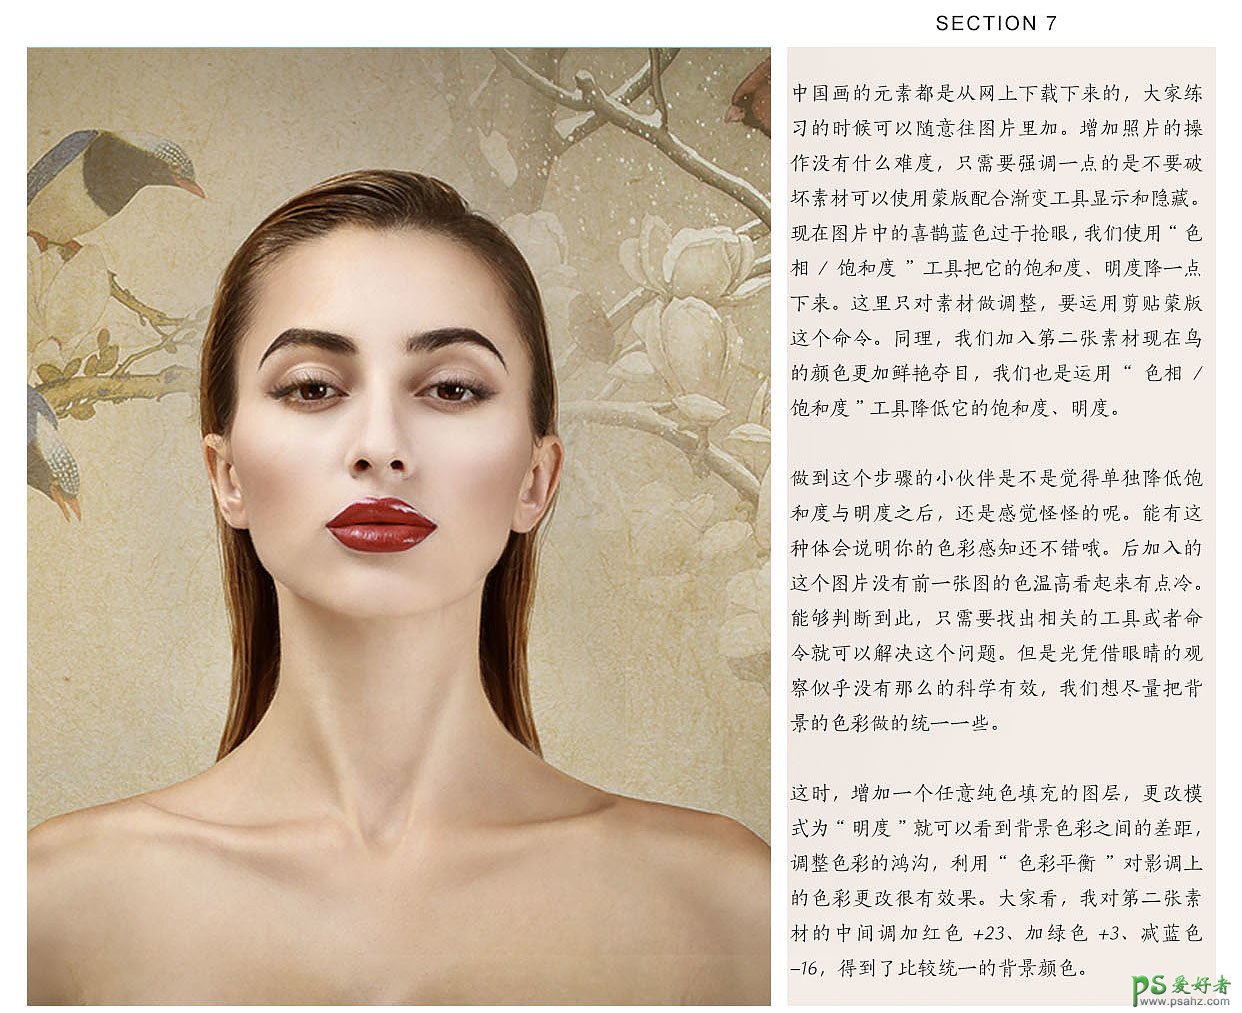 Photoshop给精致妆容的美女模特照片精修润色并加上背景。